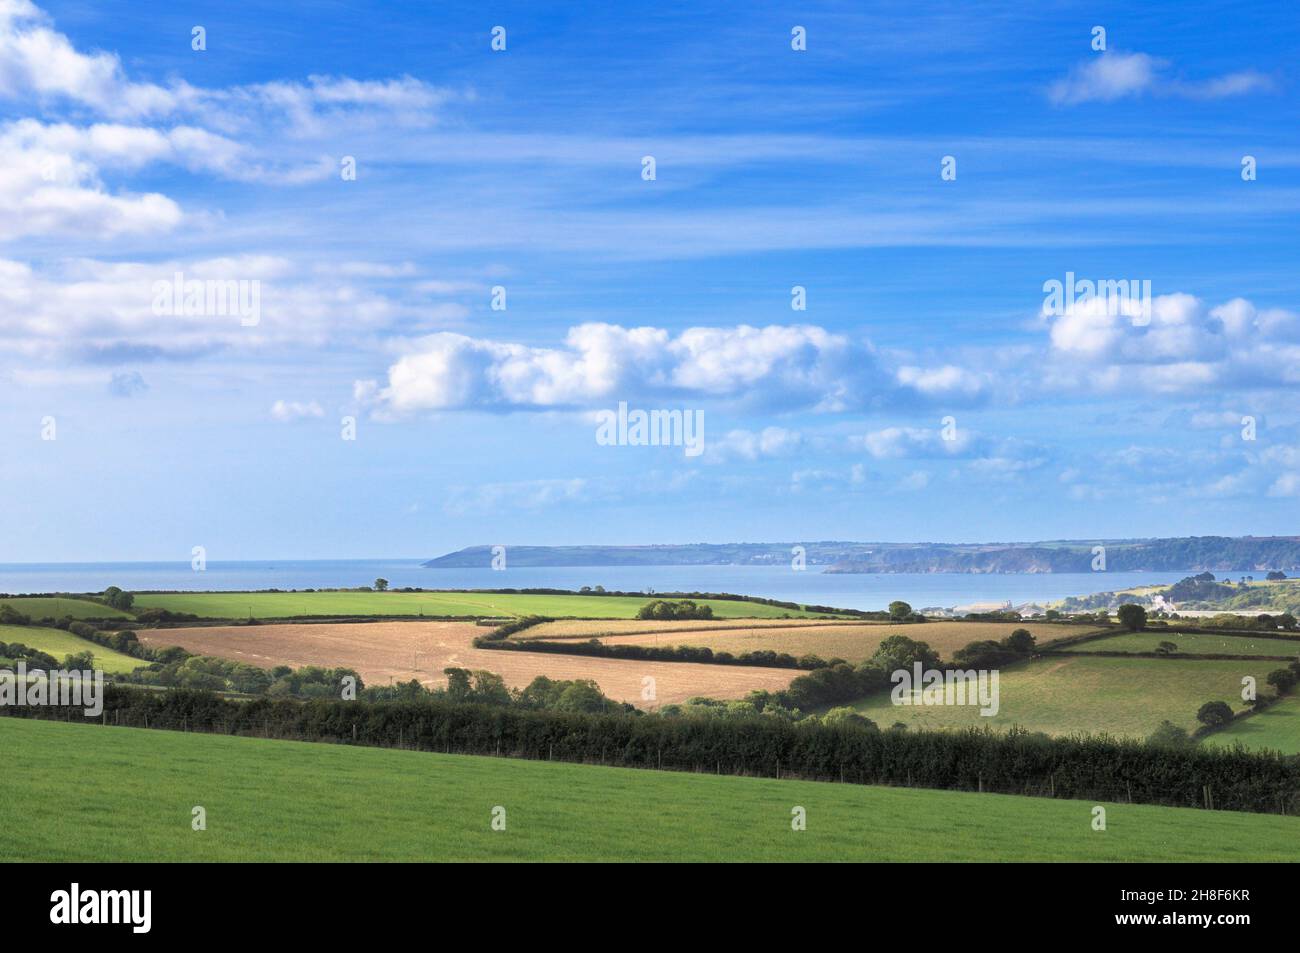 Une vue simple sur la campagne avec des champs verts, des arbres, des haies et des lits de semis sur les terres agricoles, près de la côte cornish, Cornouailles, Angleterre, Royaume-Uni. Banque D'Images